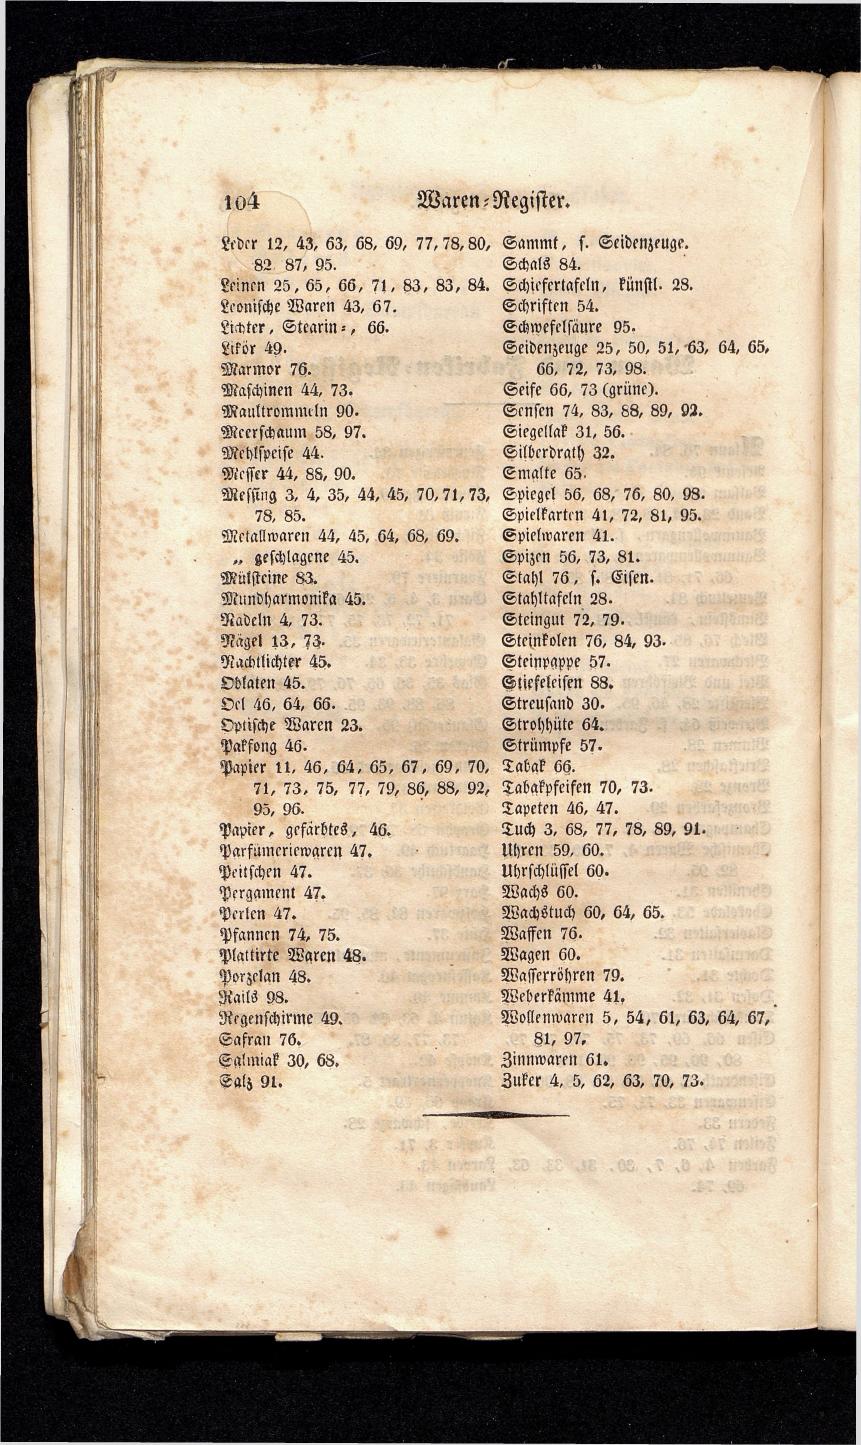 Grosses Adressbuch der Kaufleute. No. 13. Oesterreich ober u. unter der Enns 1844 - Seite 108